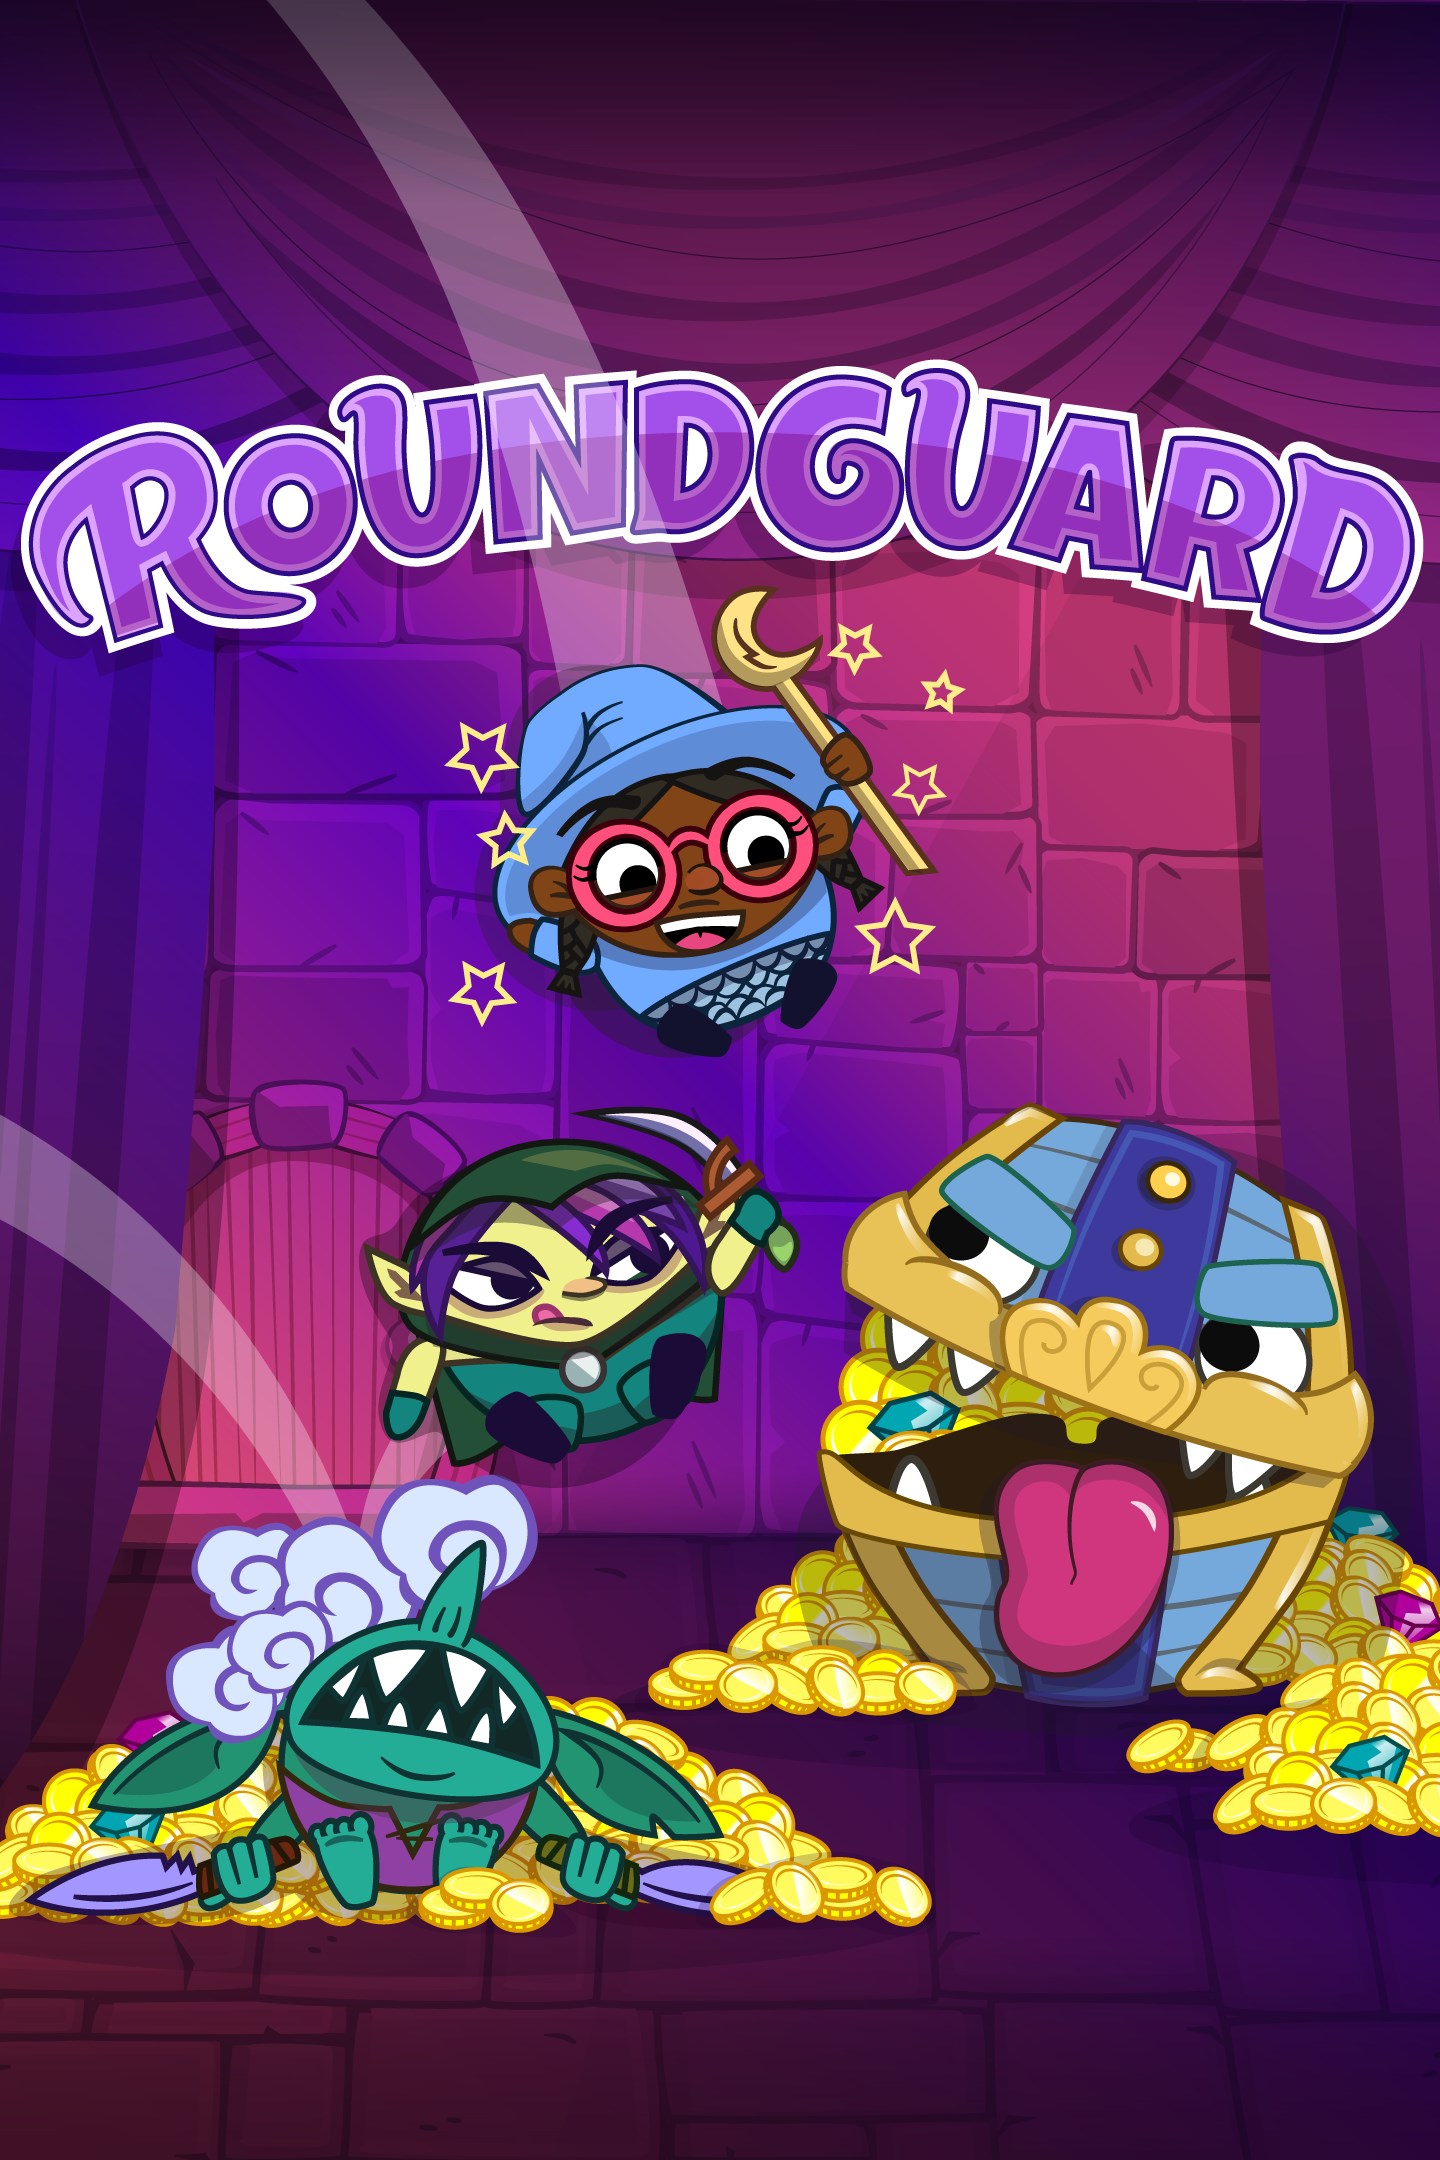 Roundguard tar med sin unika kombination av Dungeon Crawler och Bouncy Physics till Xbox One